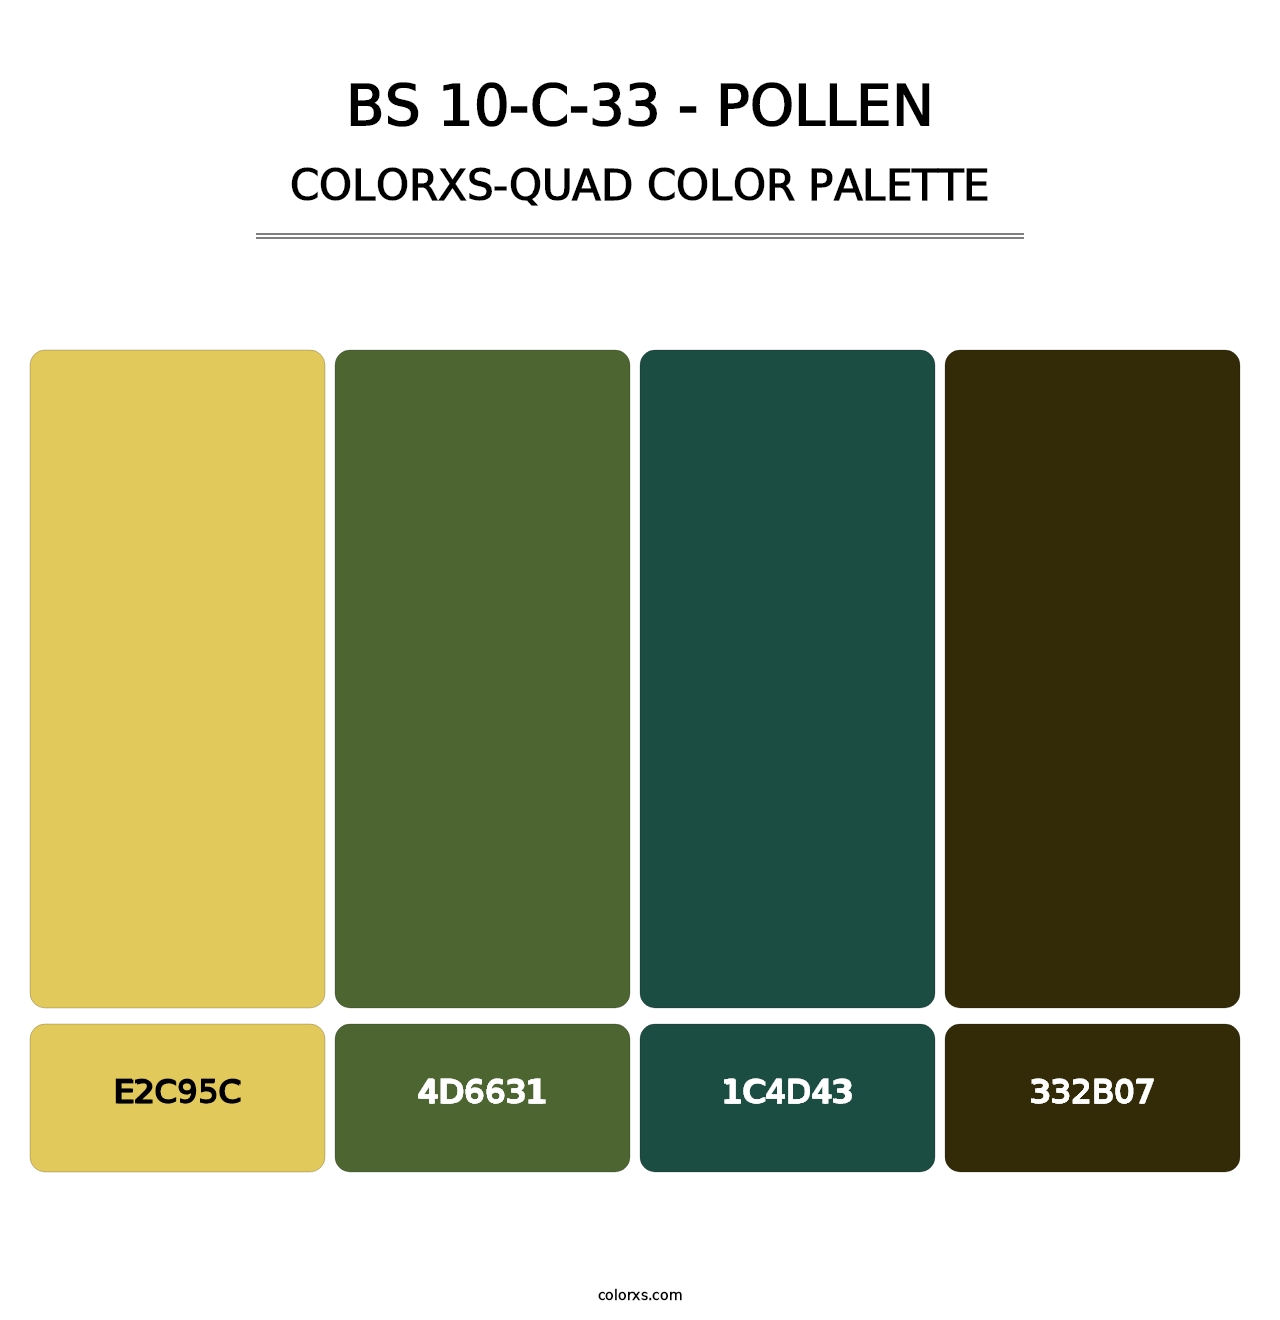 BS 10-C-33 - Pollen - Colorxs Quad Palette